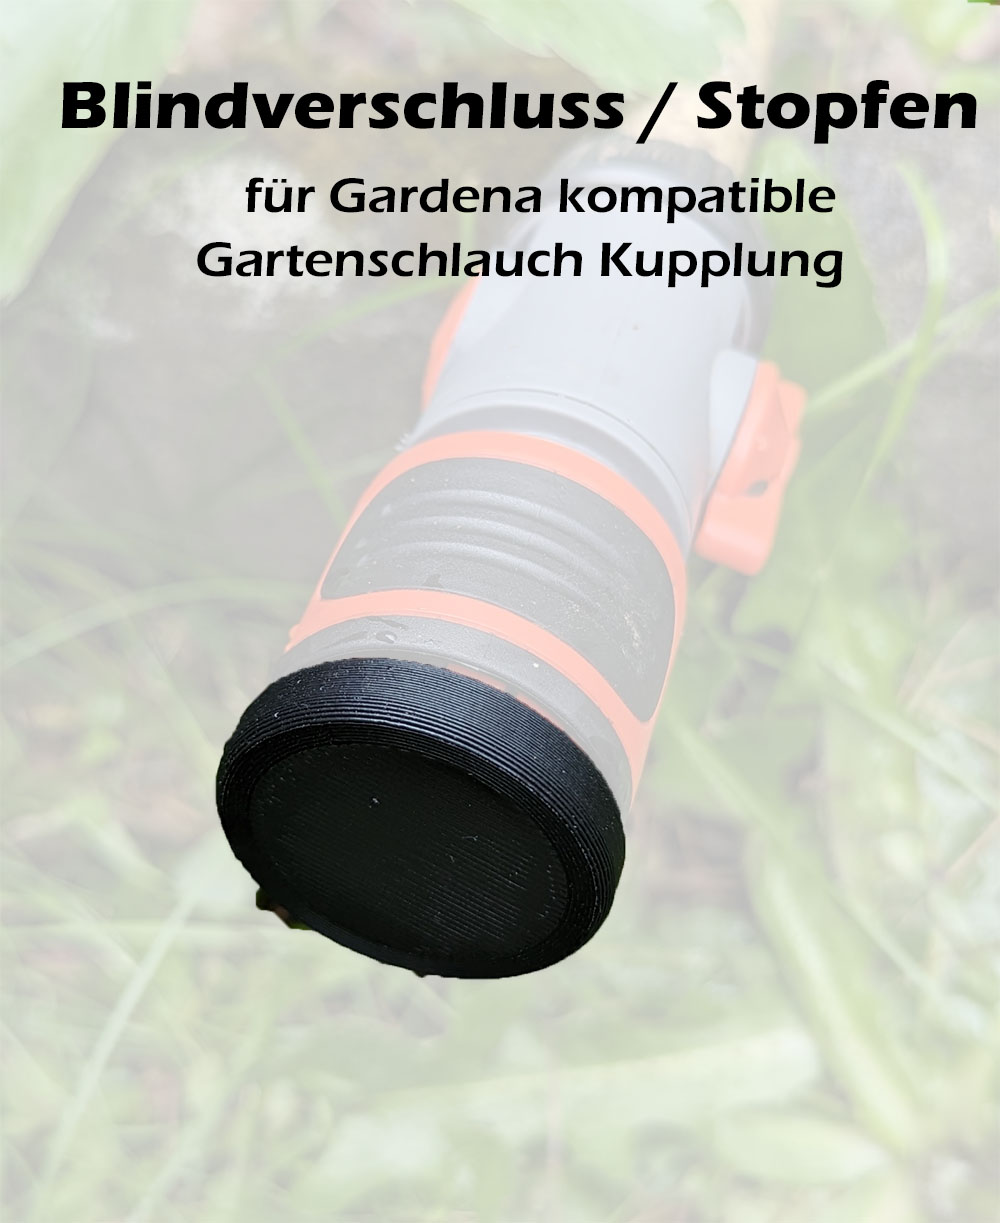 Schutz Kappe Blind Verschluss Stopfen Gardena kompatibel Garten